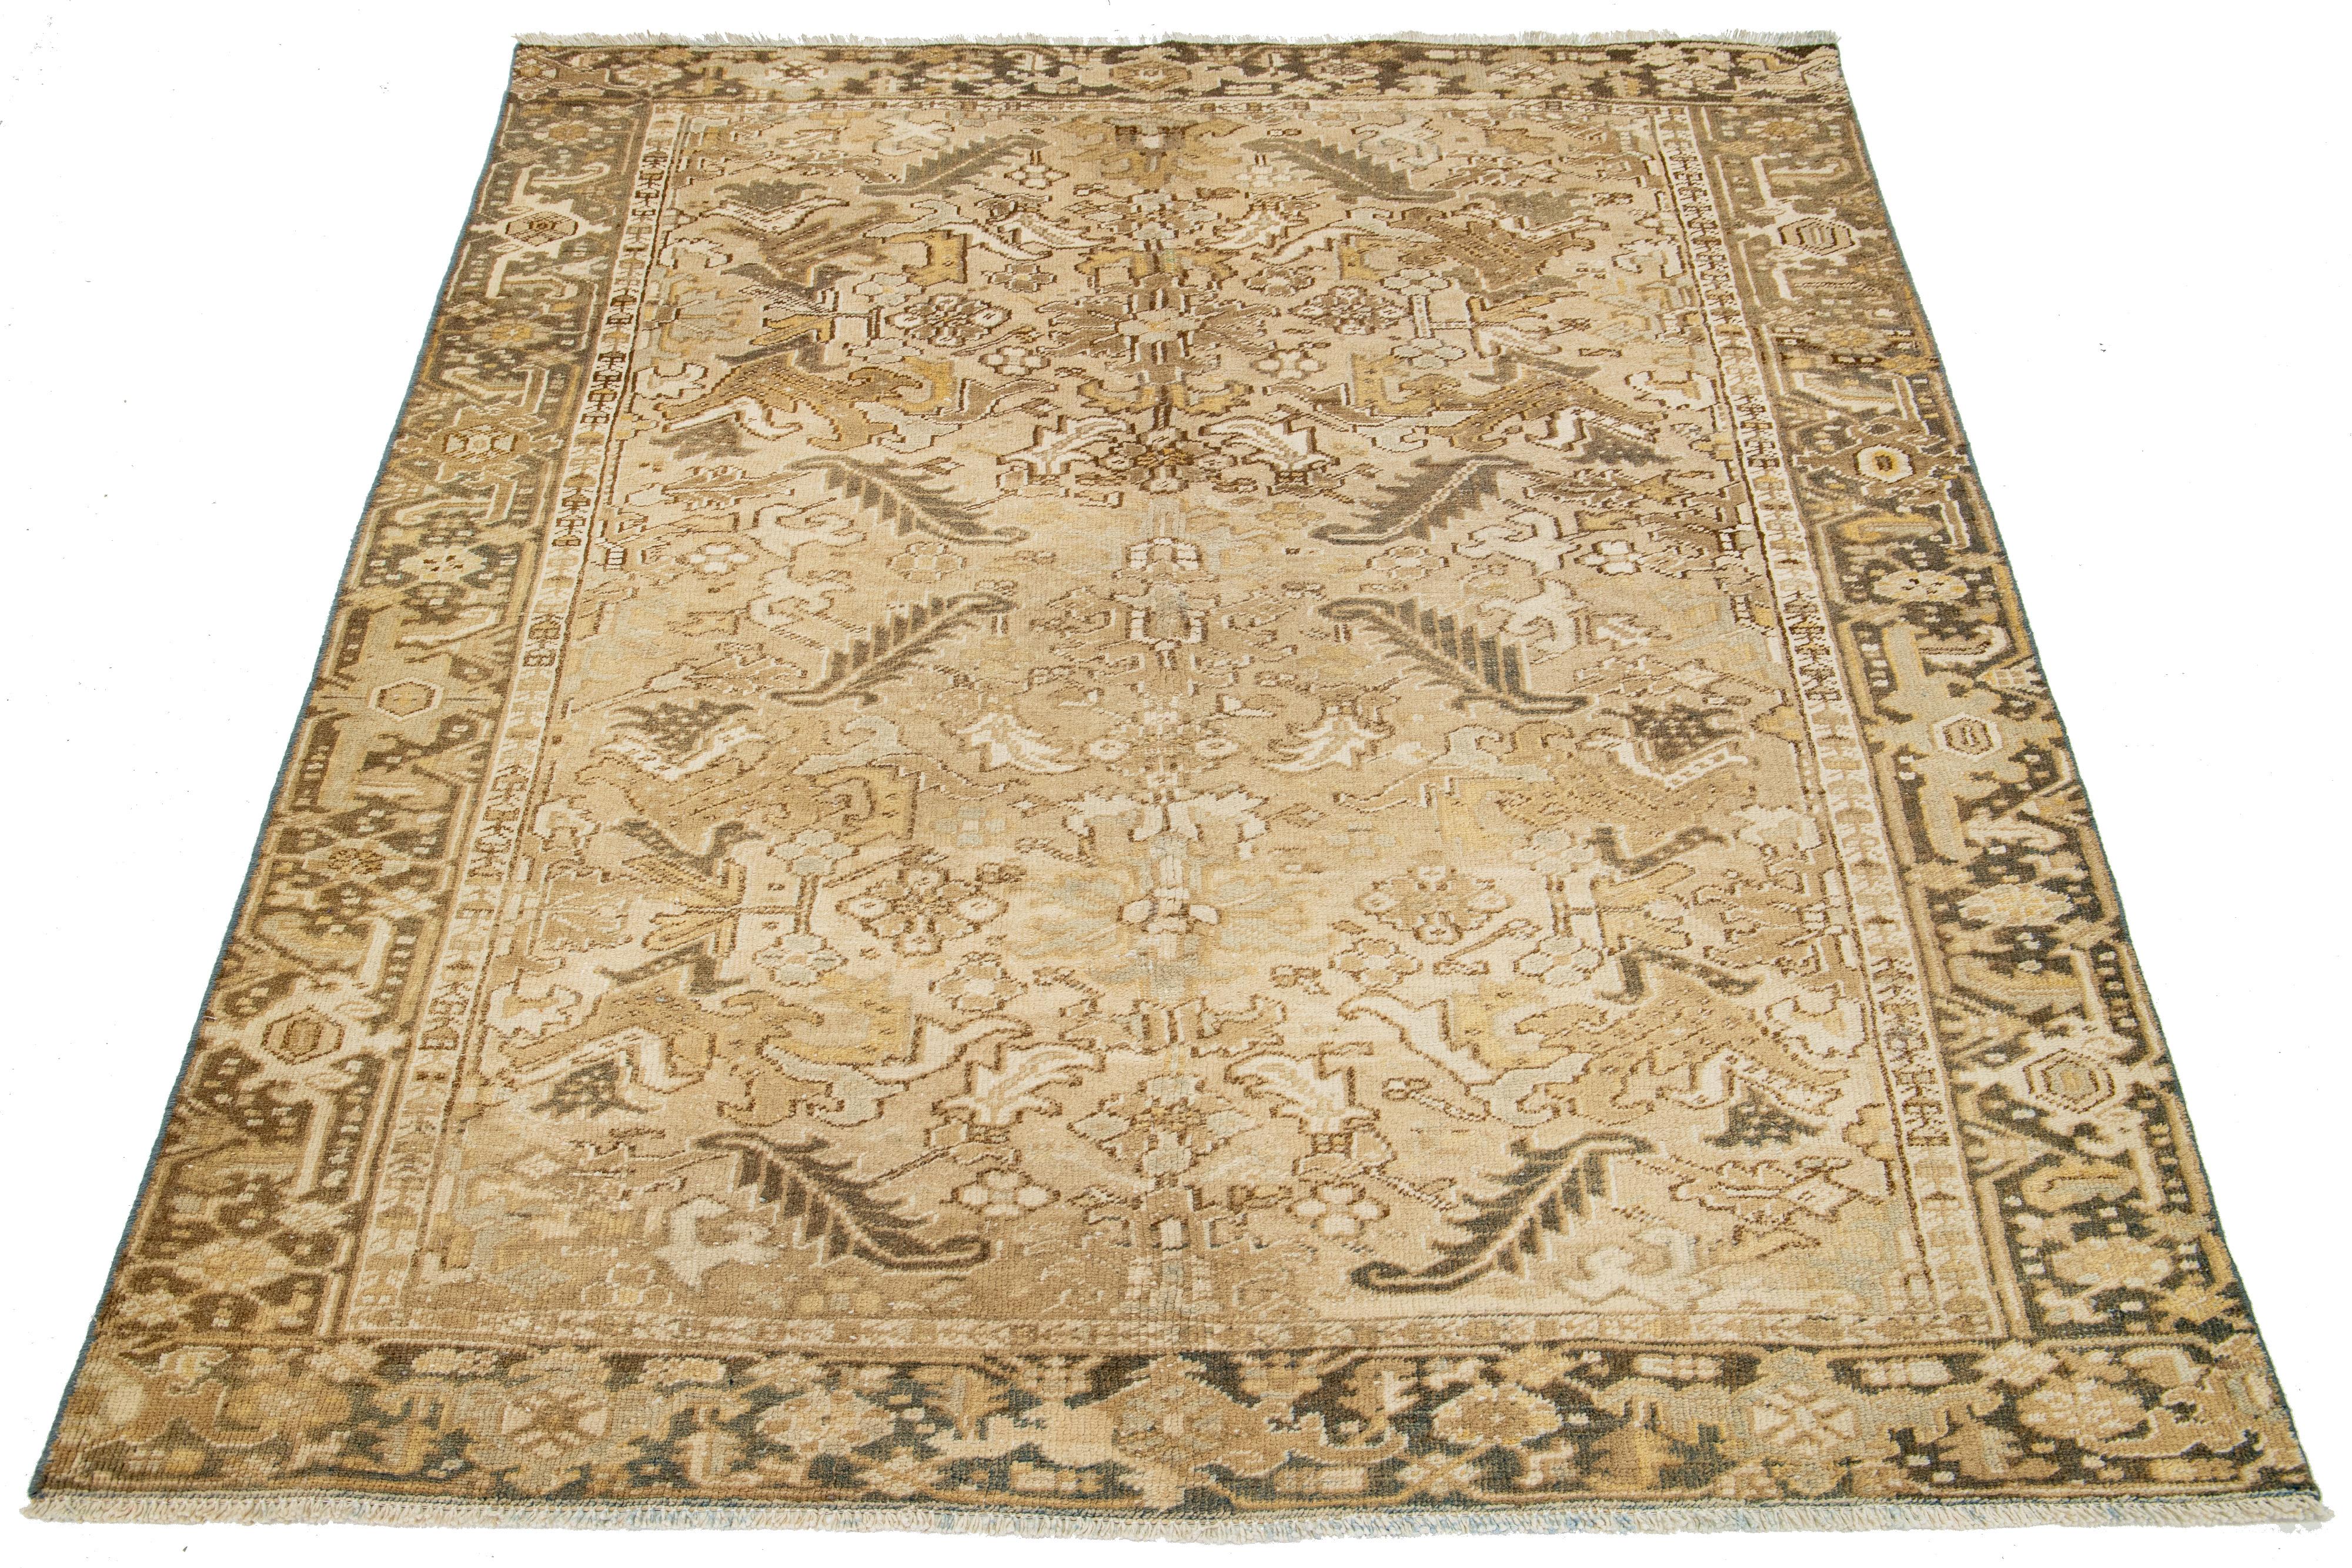 Un tapis Heriz antique de Perse est noué à la main avec de la laine. Il présente un champ beige avec un motif bleu et marron sur toute la surface.

Ce tapis mesure 6'4'' x 7'10